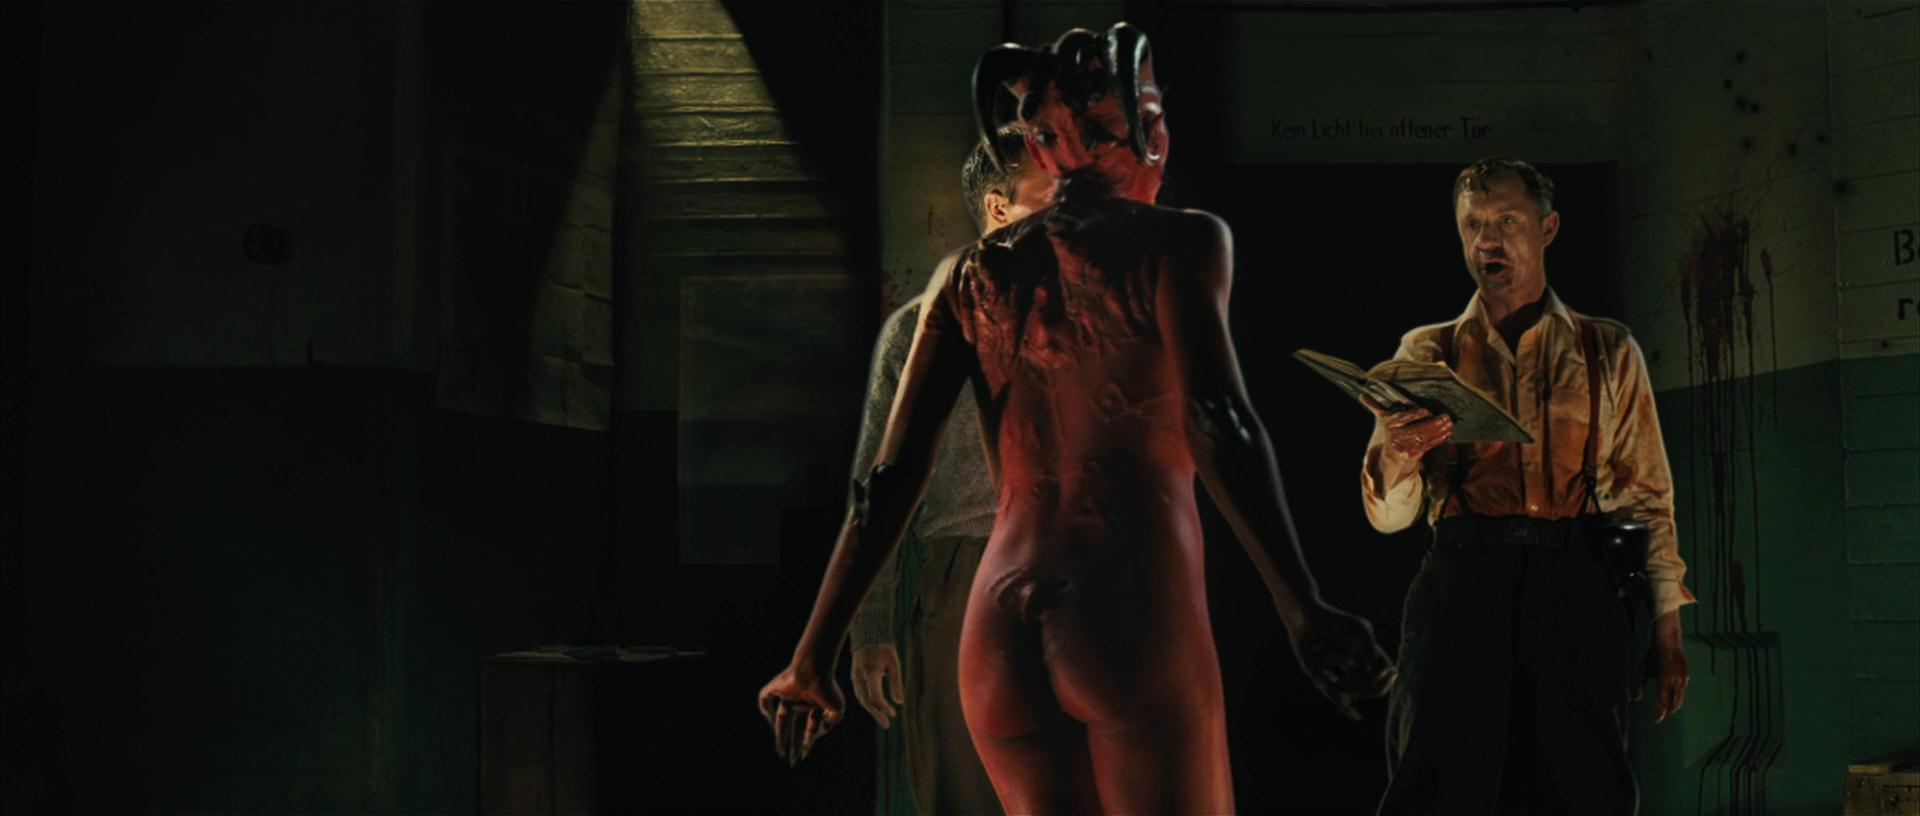 Джина Варела nude pics.